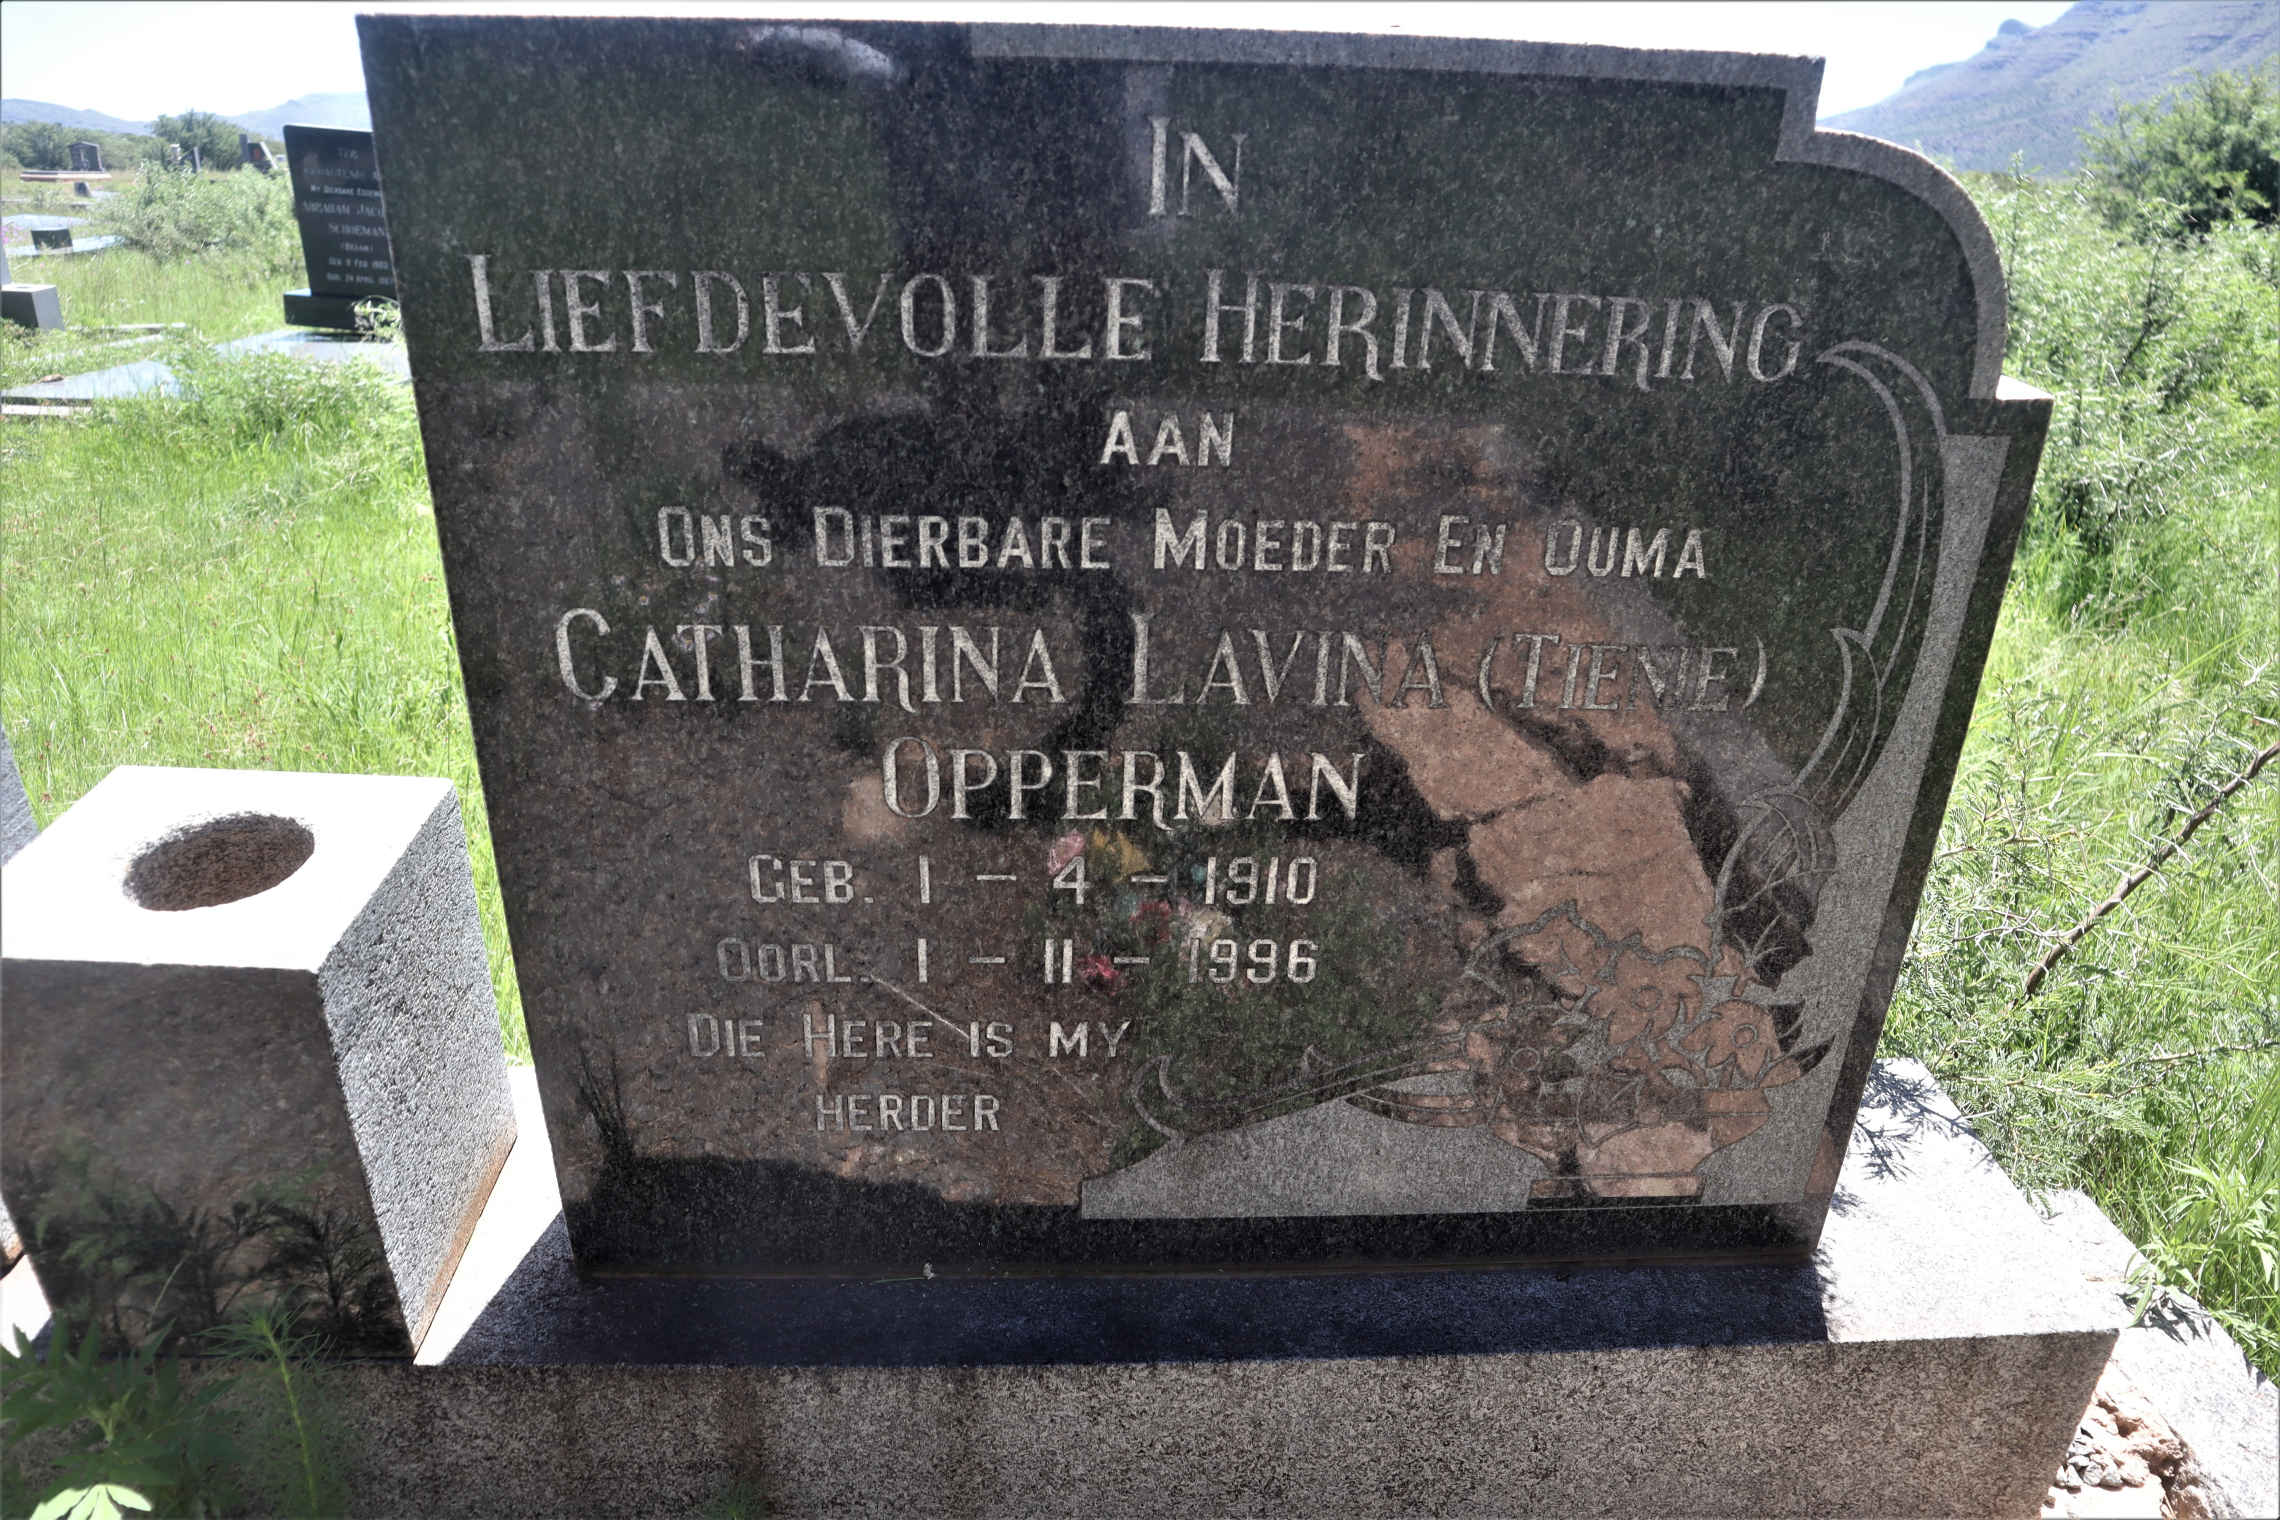 OPPERMAN Catharina Lavina 1910-1996